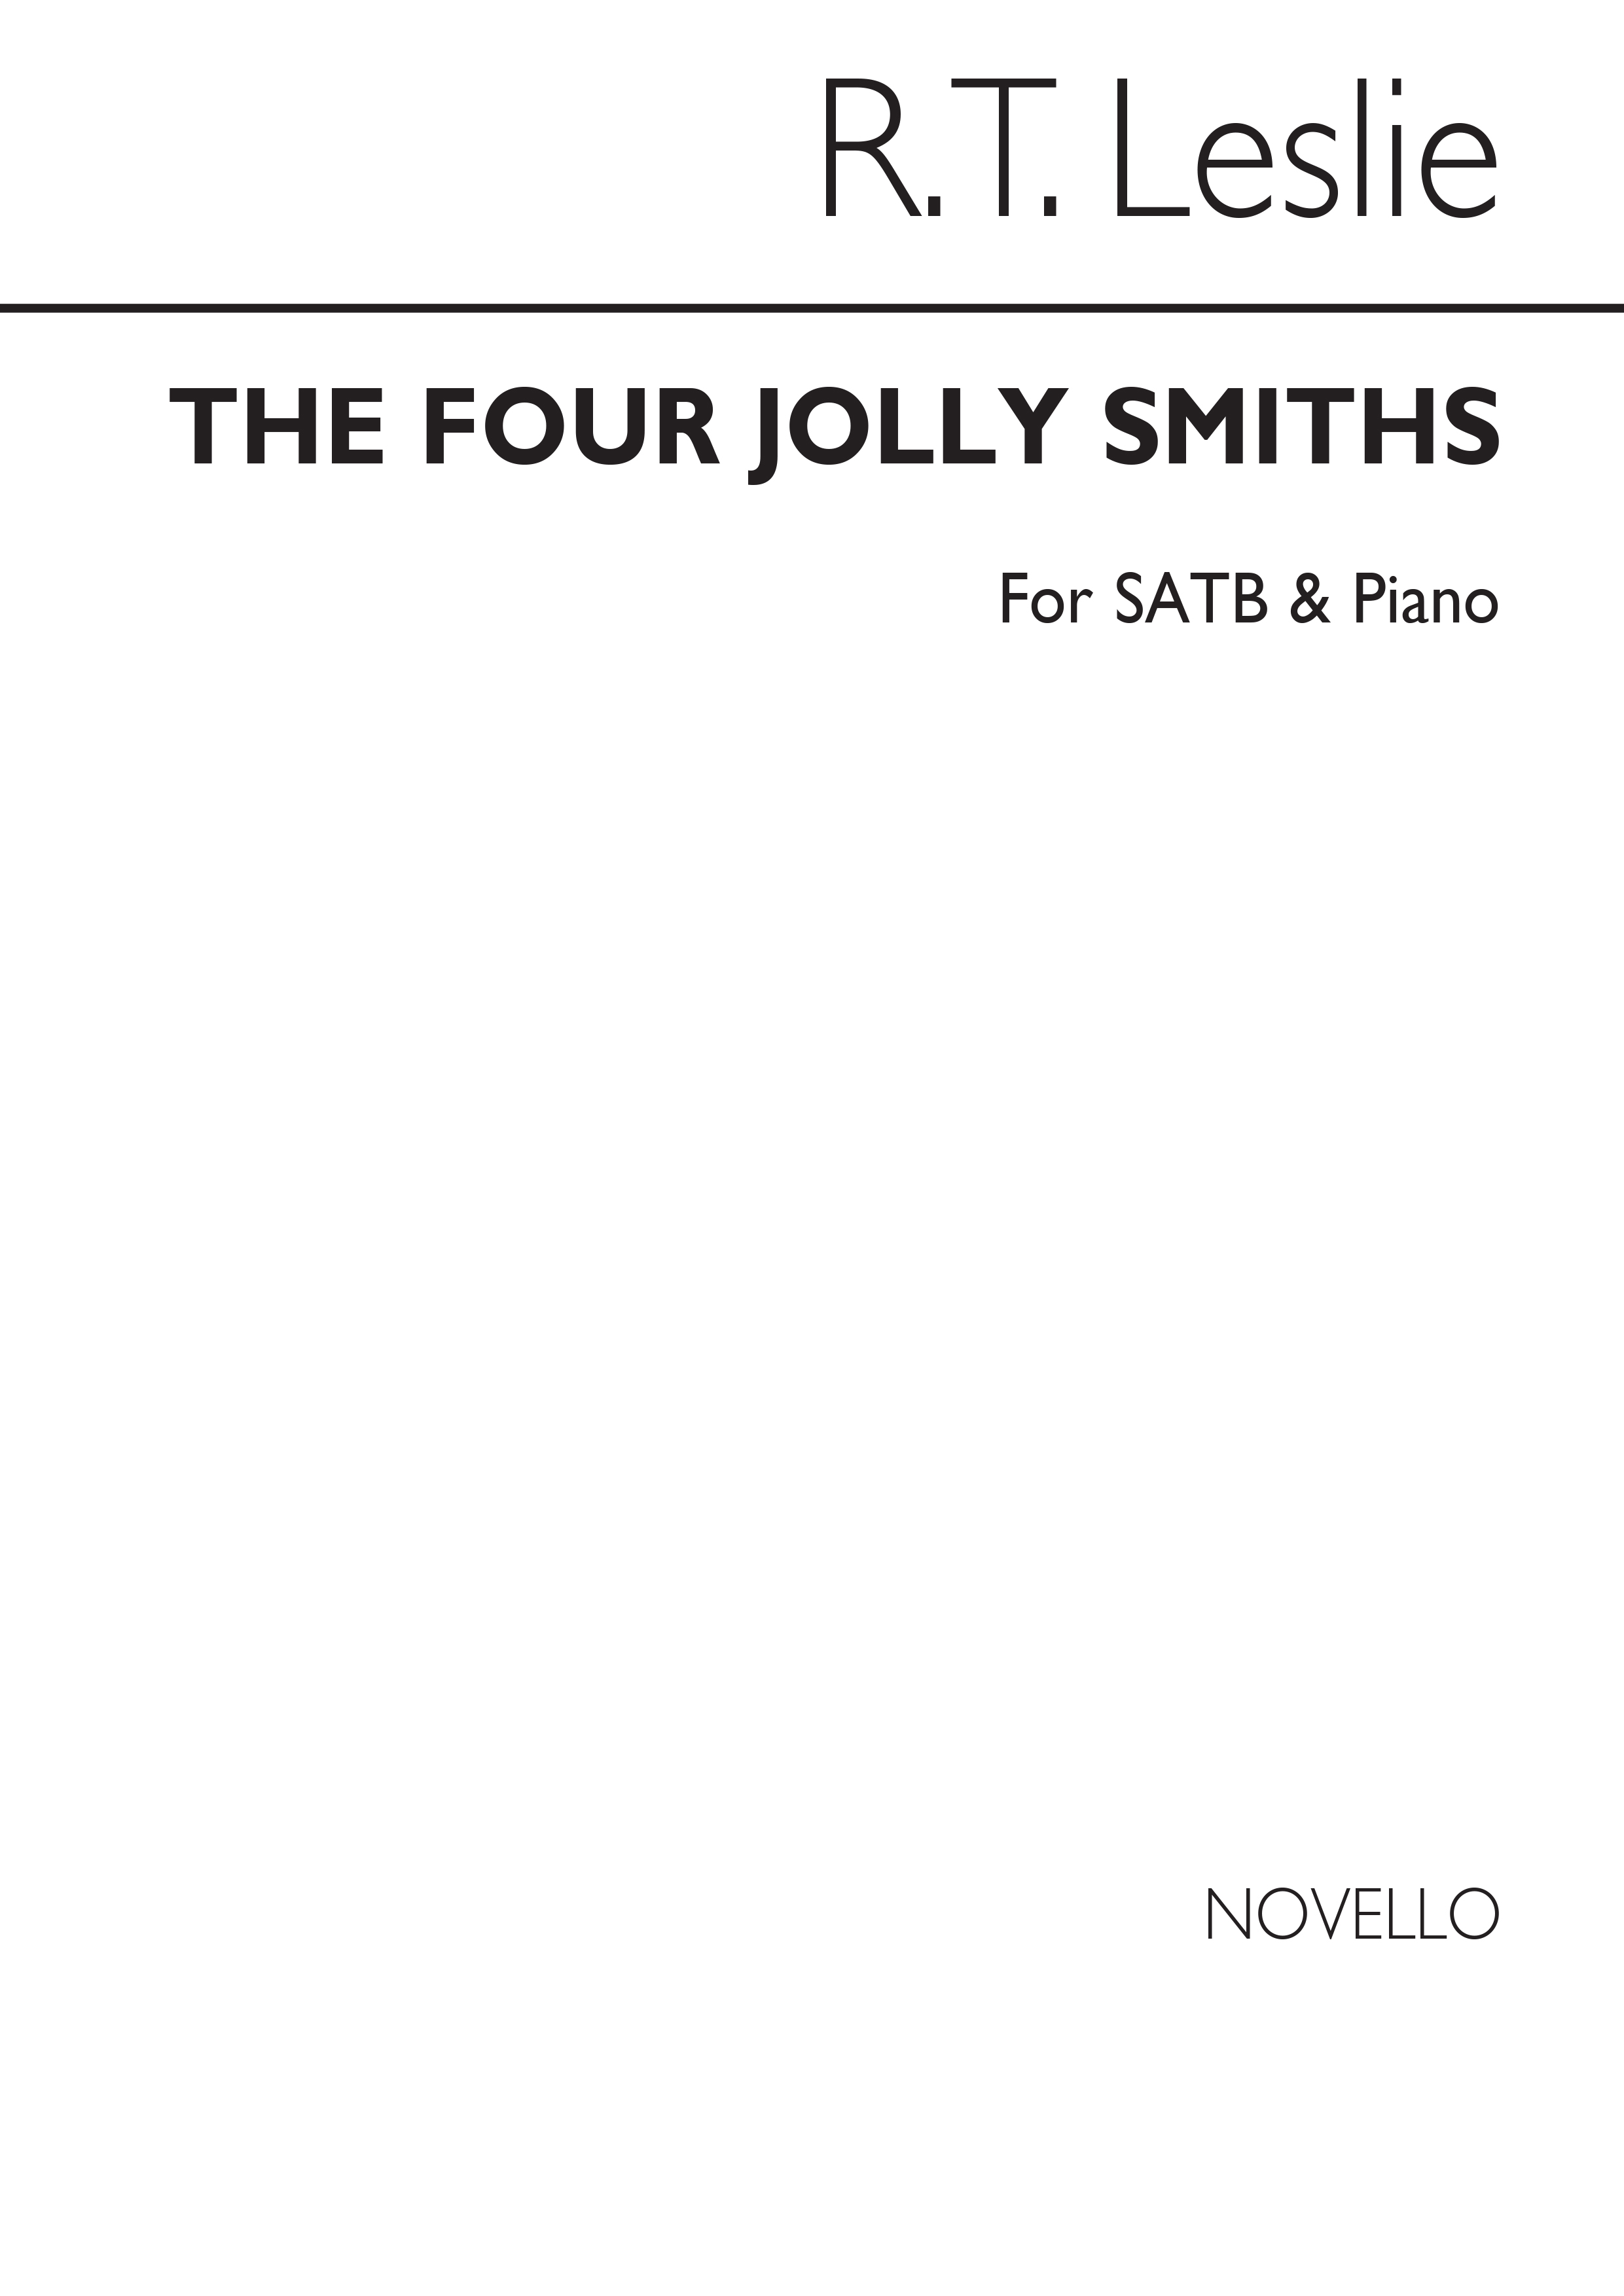 R.T. Leslie: The Four Jolly Smiths Satb